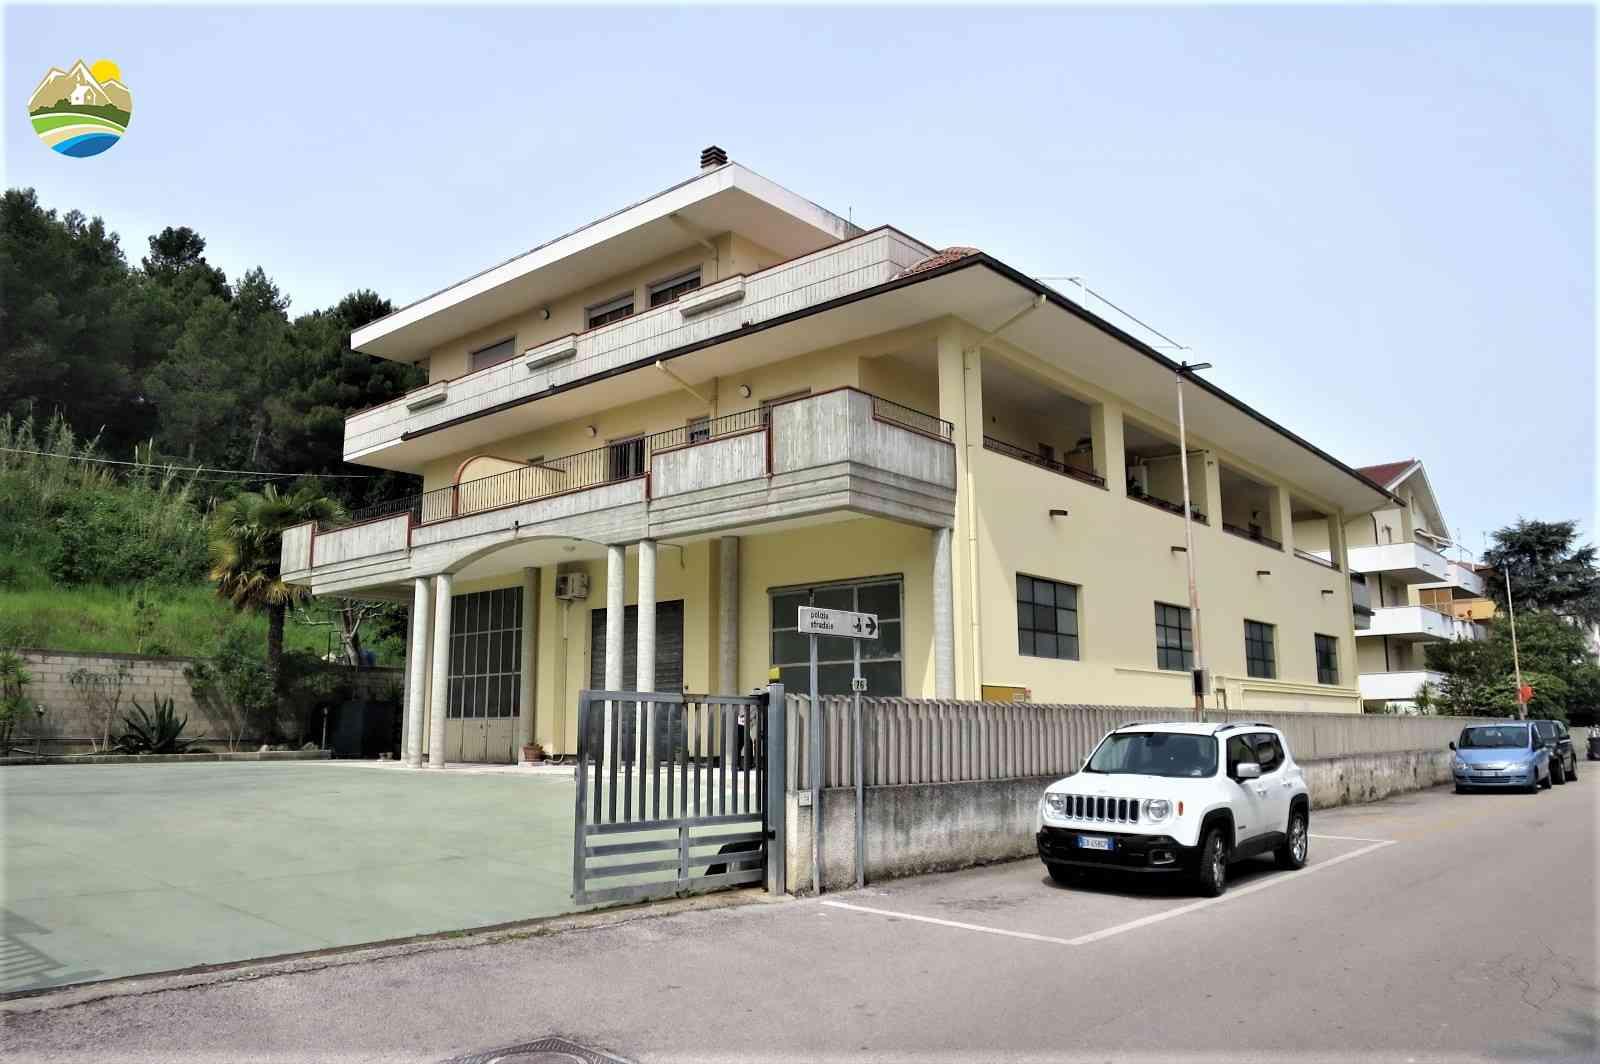 Penthouse Penthouse for sale Pineto (TE), Attico dei Pini - Pineto - EUR 466.538 490